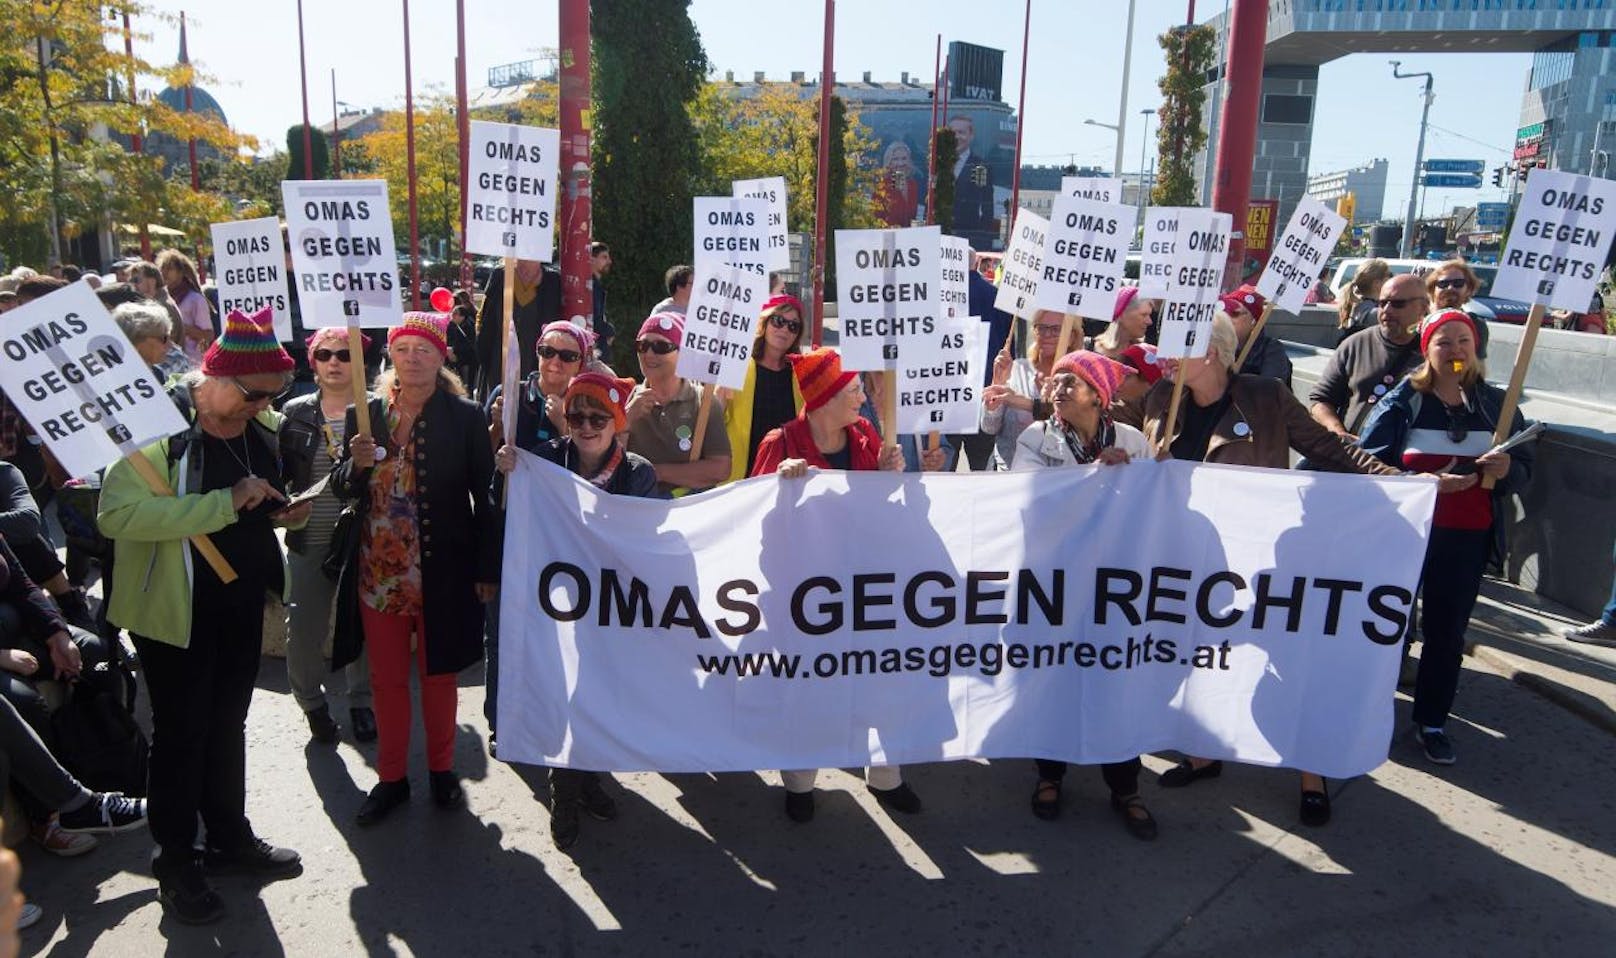 Die Omas pochen auf das Recht auf Asyl "für all jene, die vor Krieg, Verfolgung und Zerstörung fliehen".